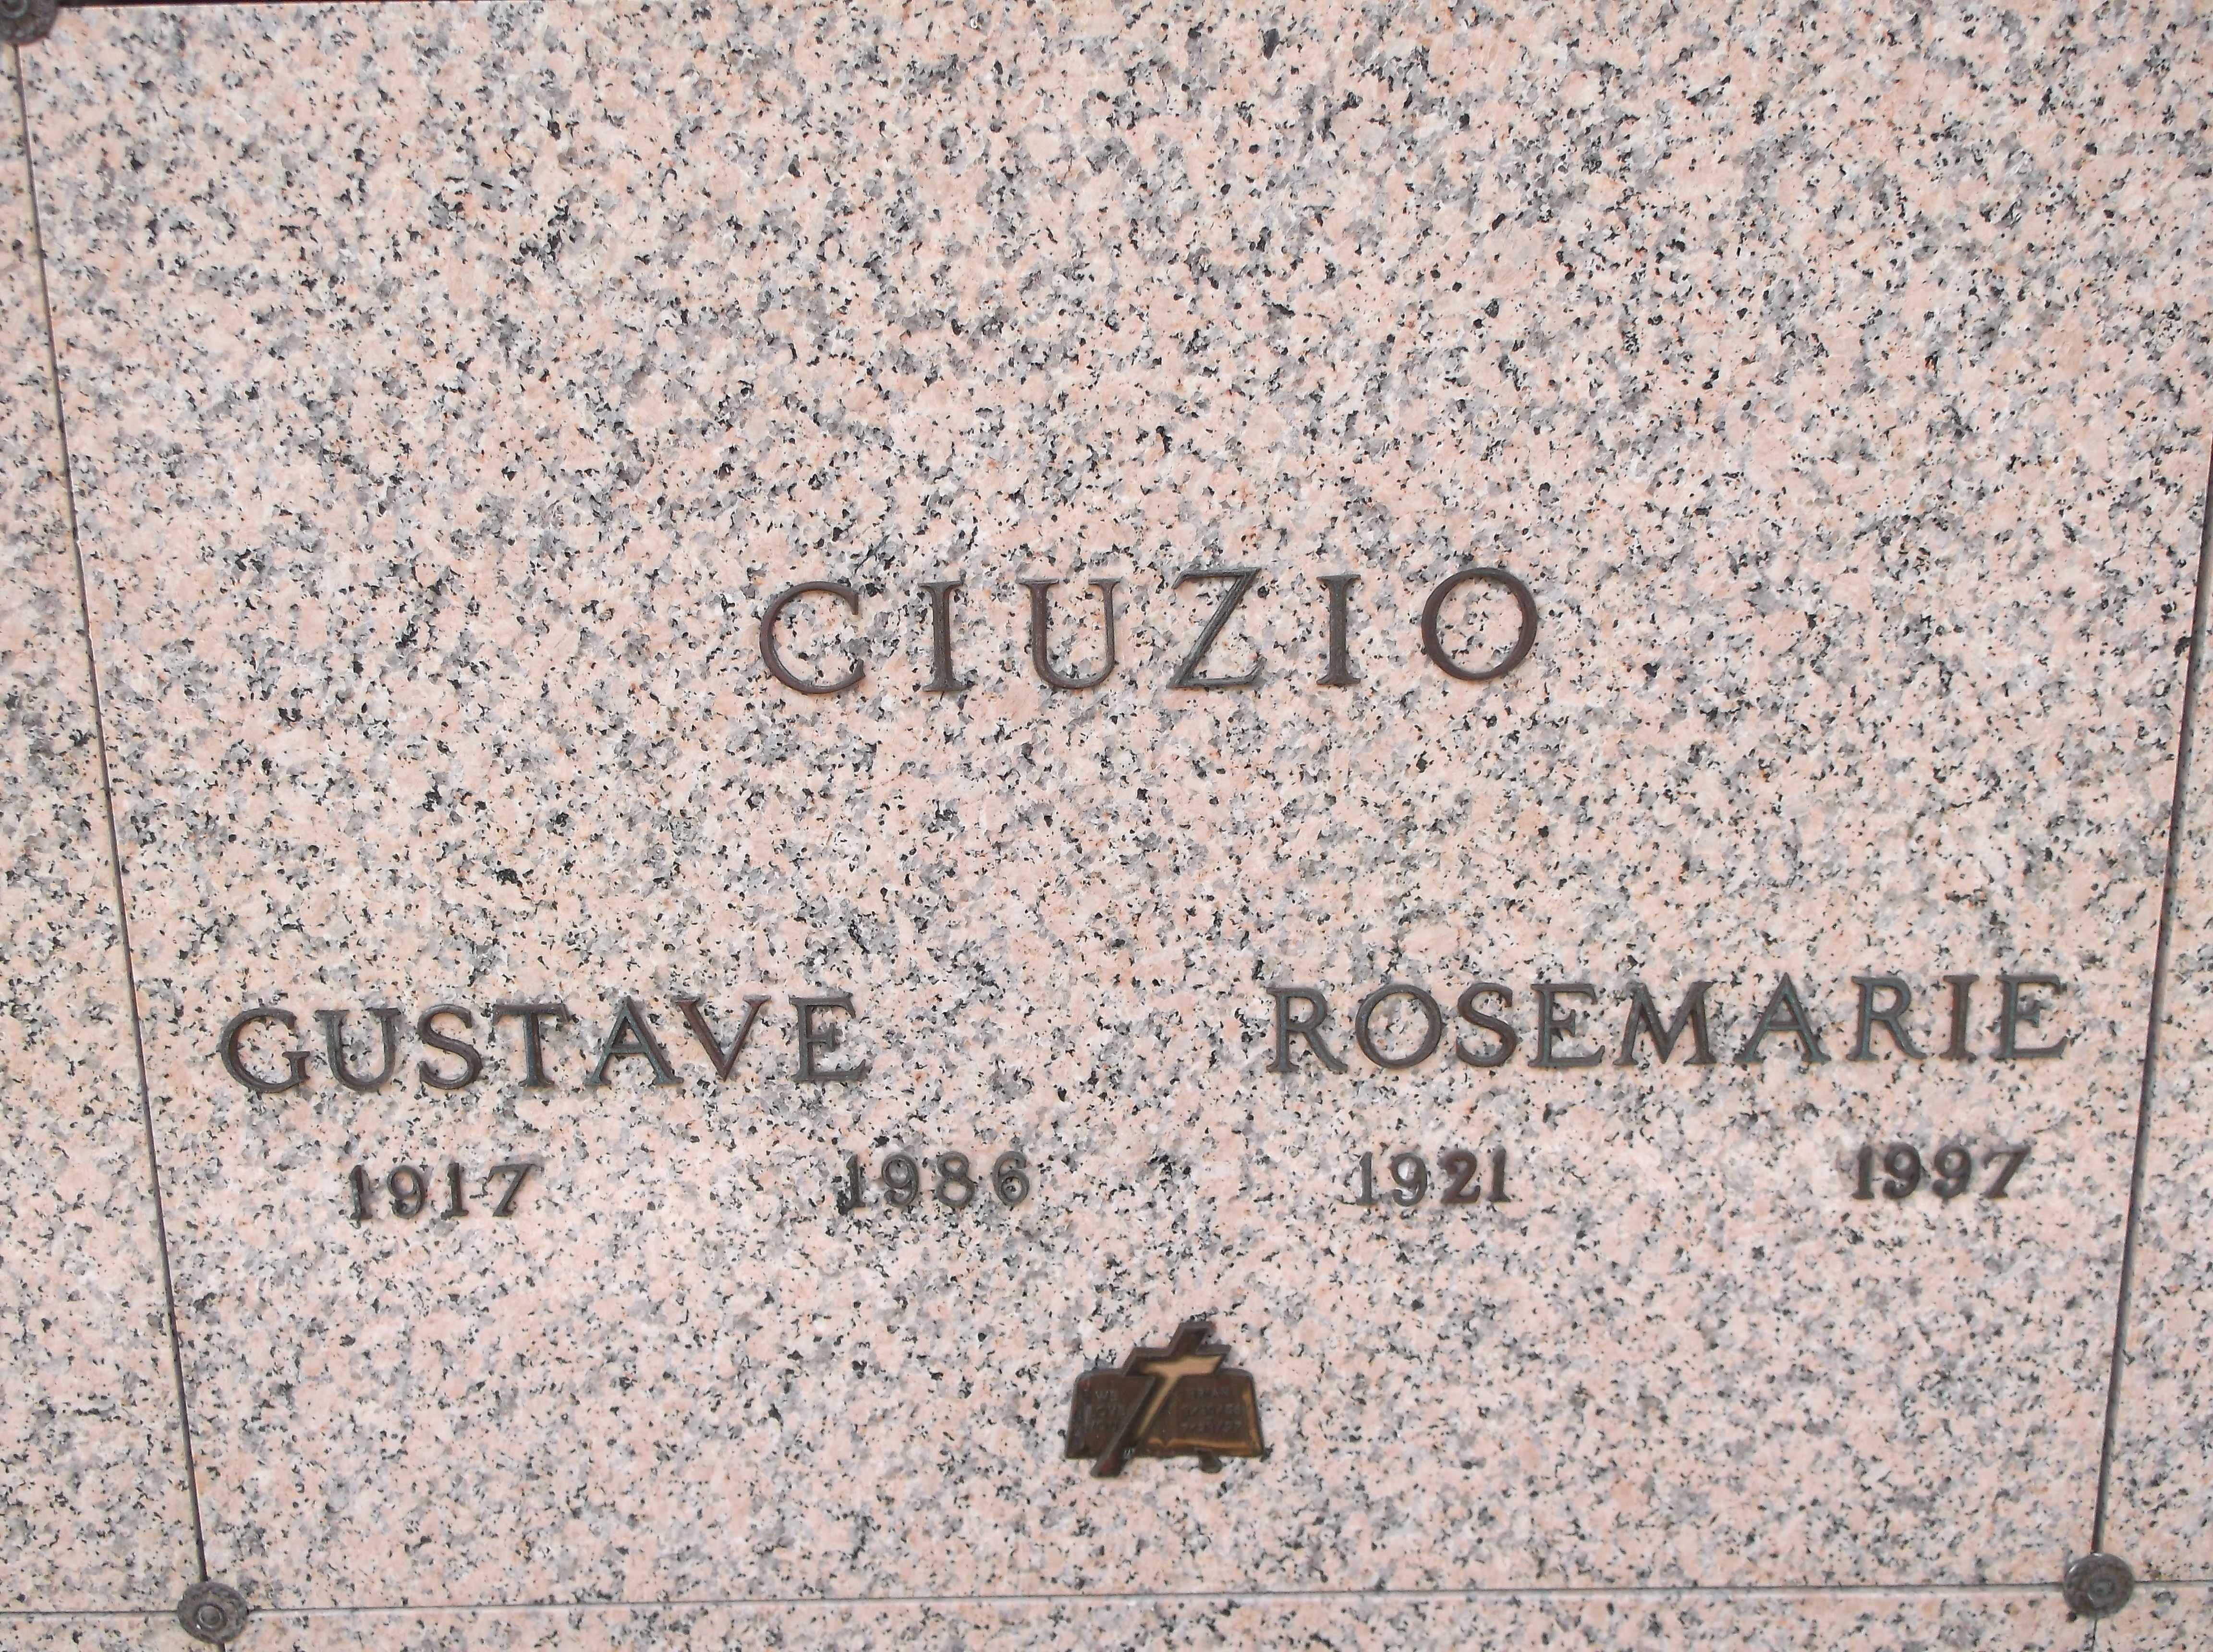 Gustave Ciuzio